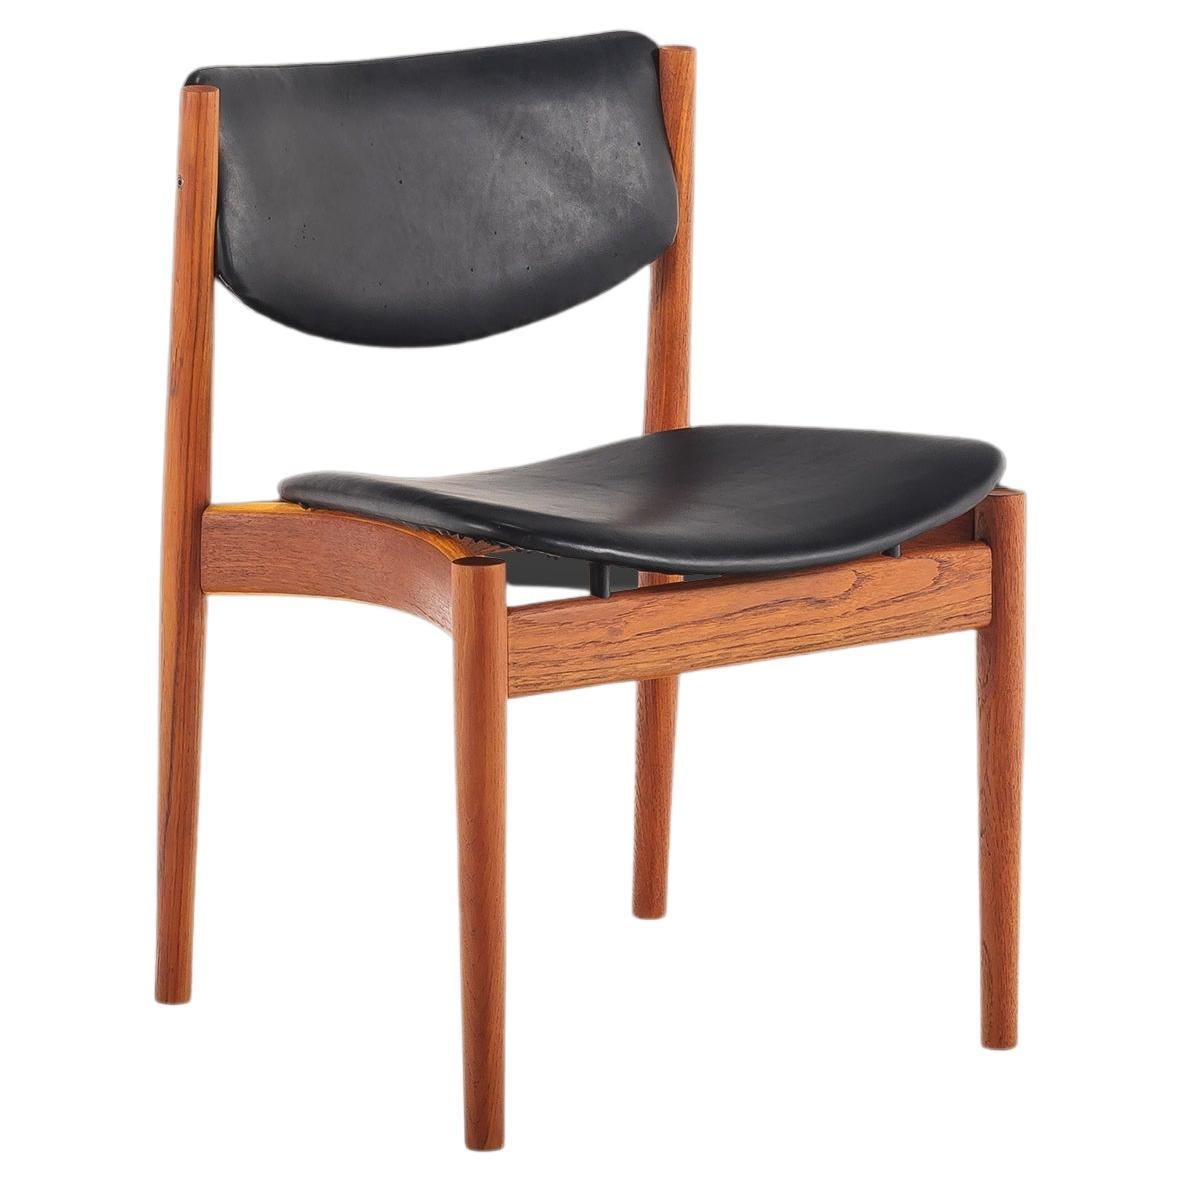 Model 197 Side / Desk / Dining Chair by Finn Juhl for France & Son, c. 1960's For Sale